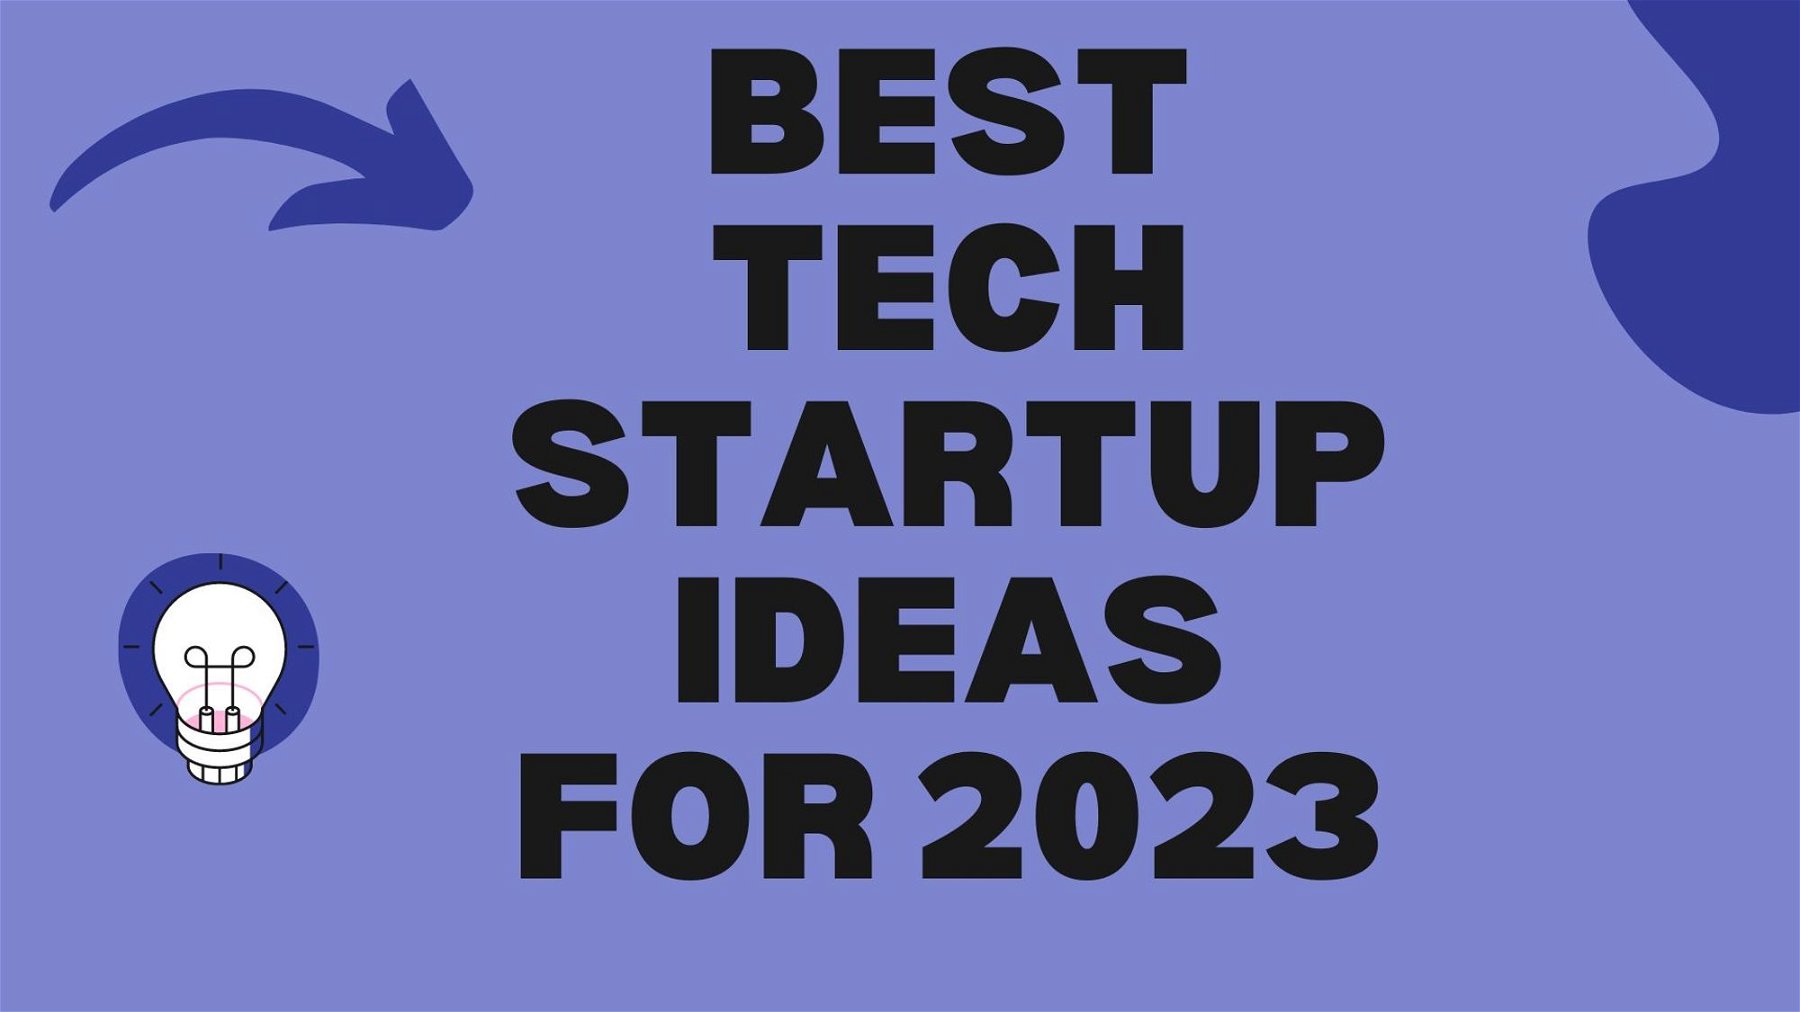 Best Tech Startup Ideas for 2023